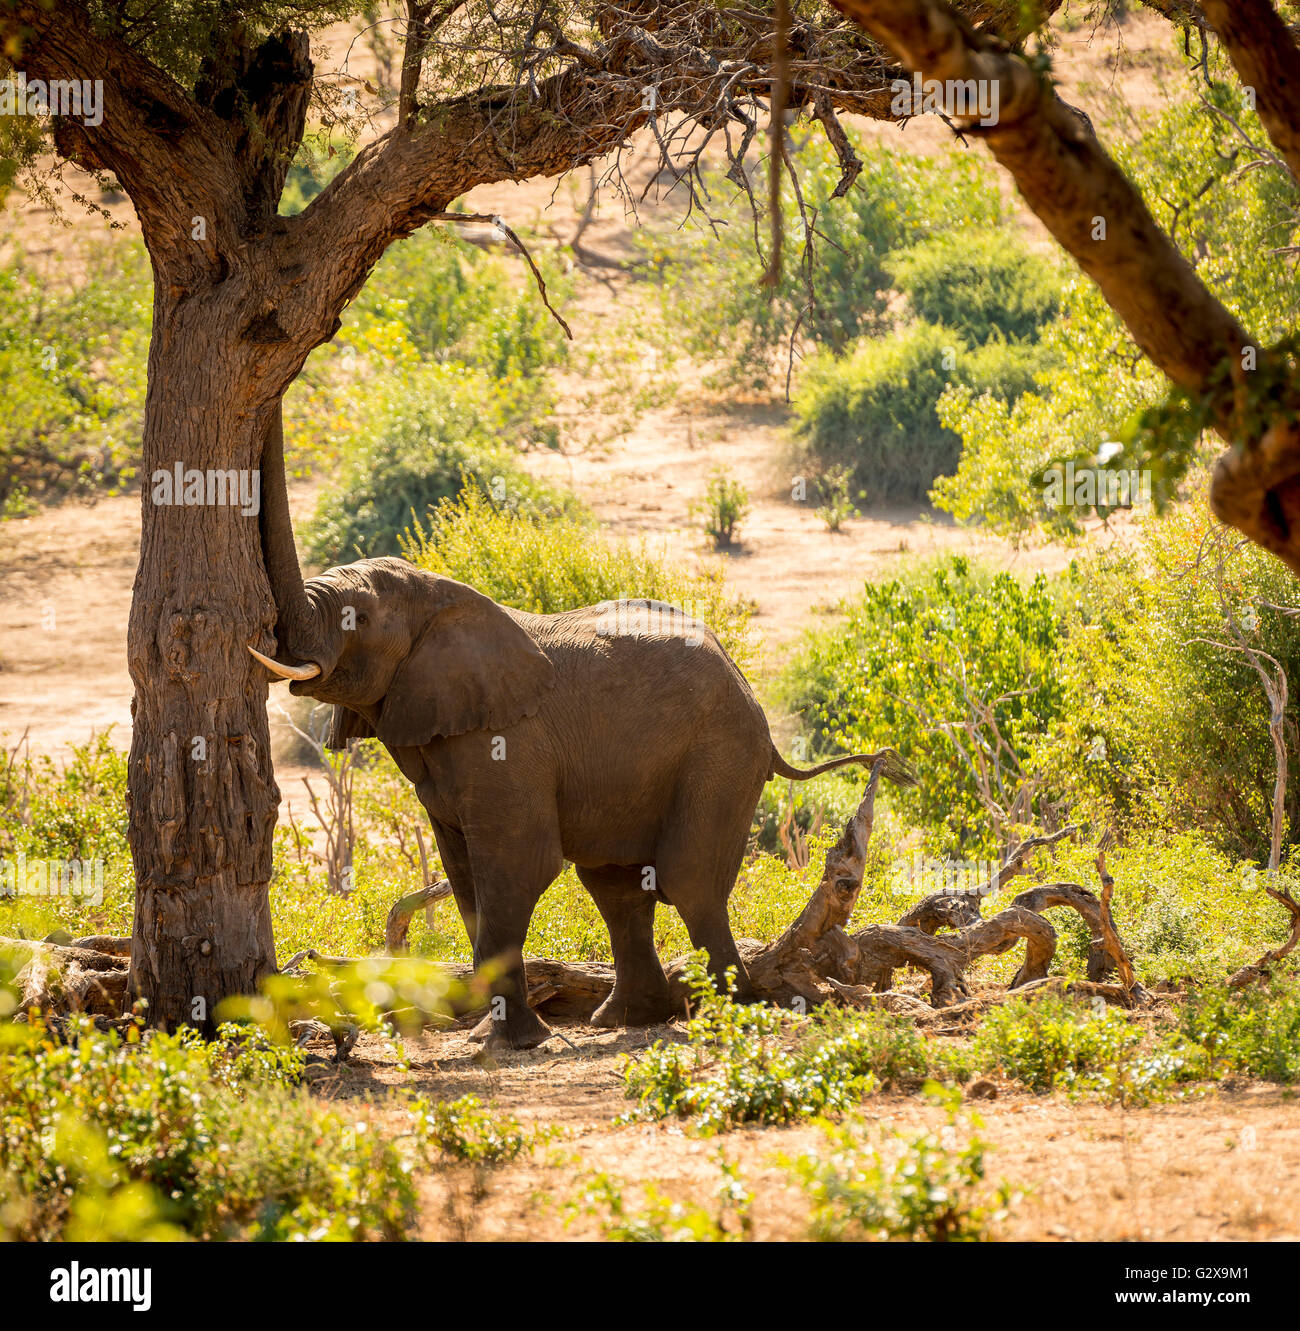 L'éléphant au parc national de Chobe, au Botswana, l'Afrique avec son tronc contre un arbre Banque D'Images